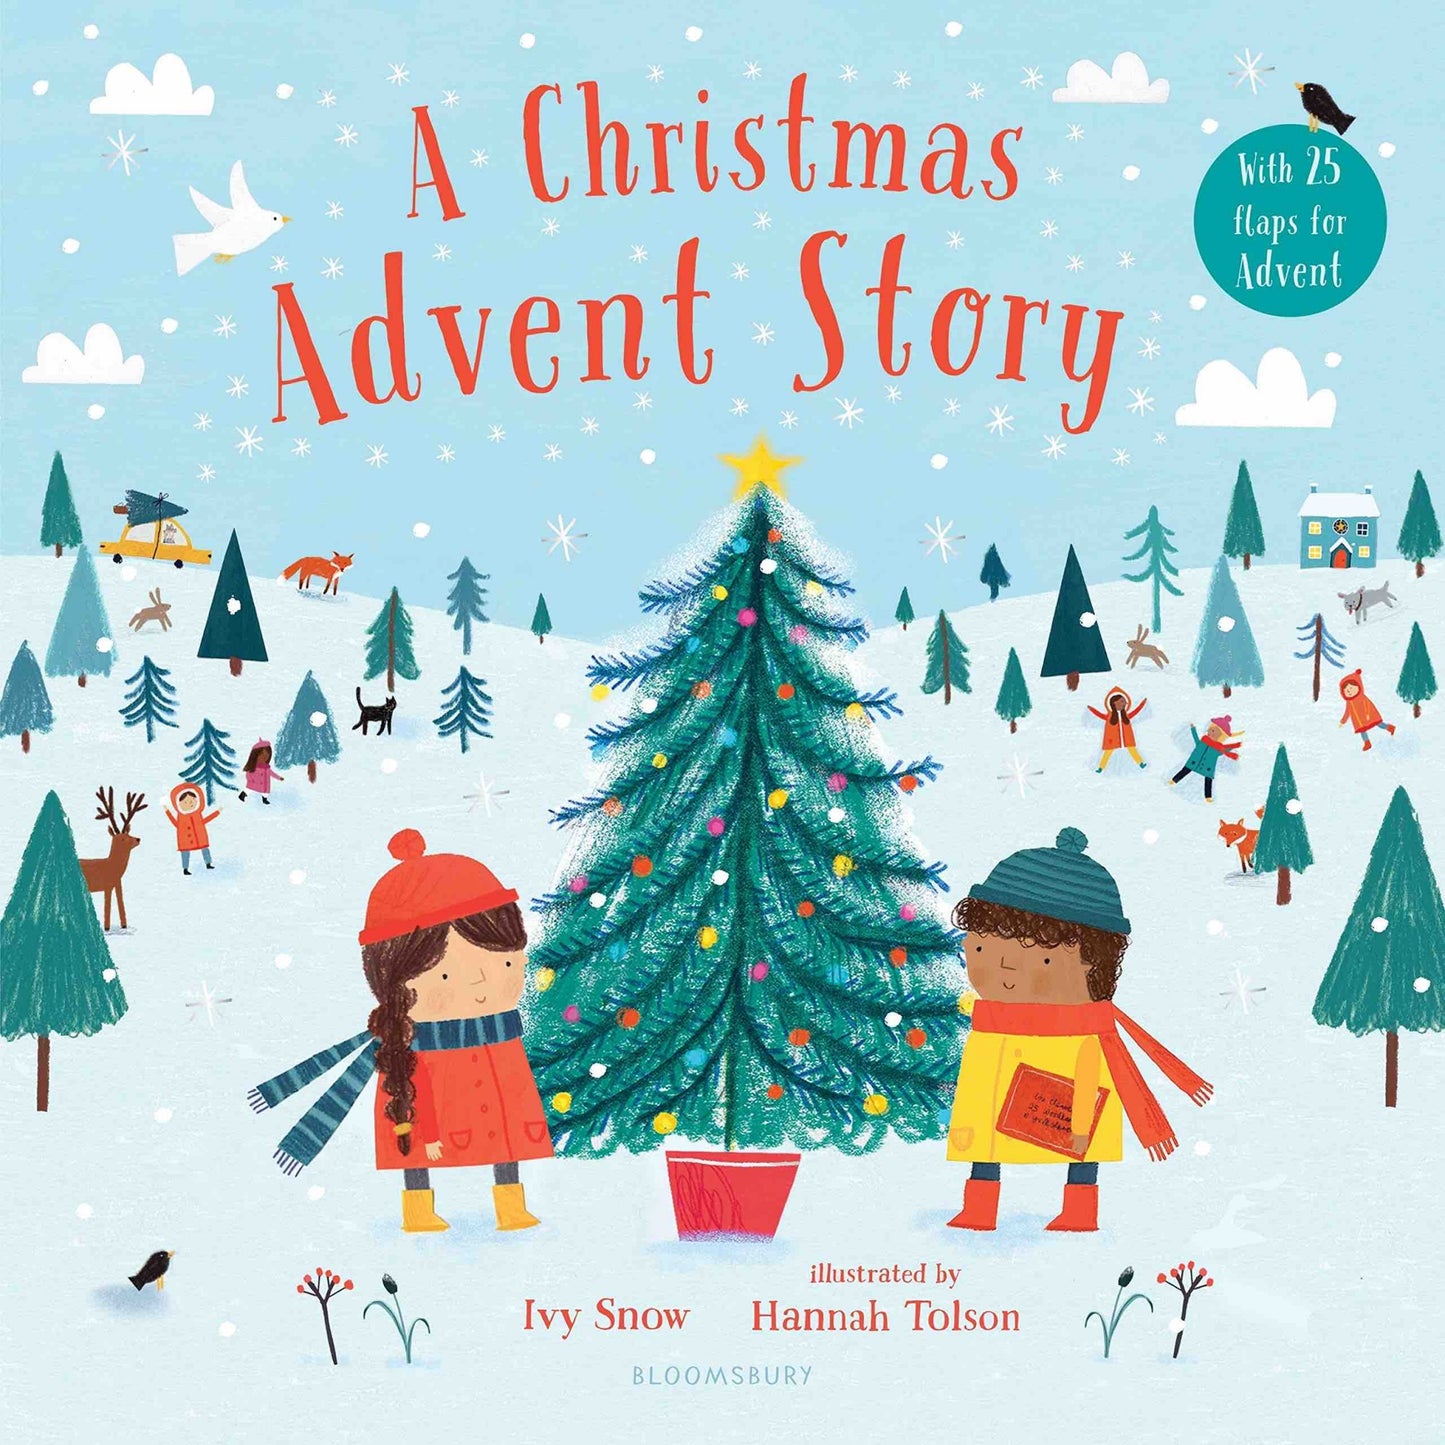 A Christmas Advent Story - Ivy Snow + Hannah Tolson